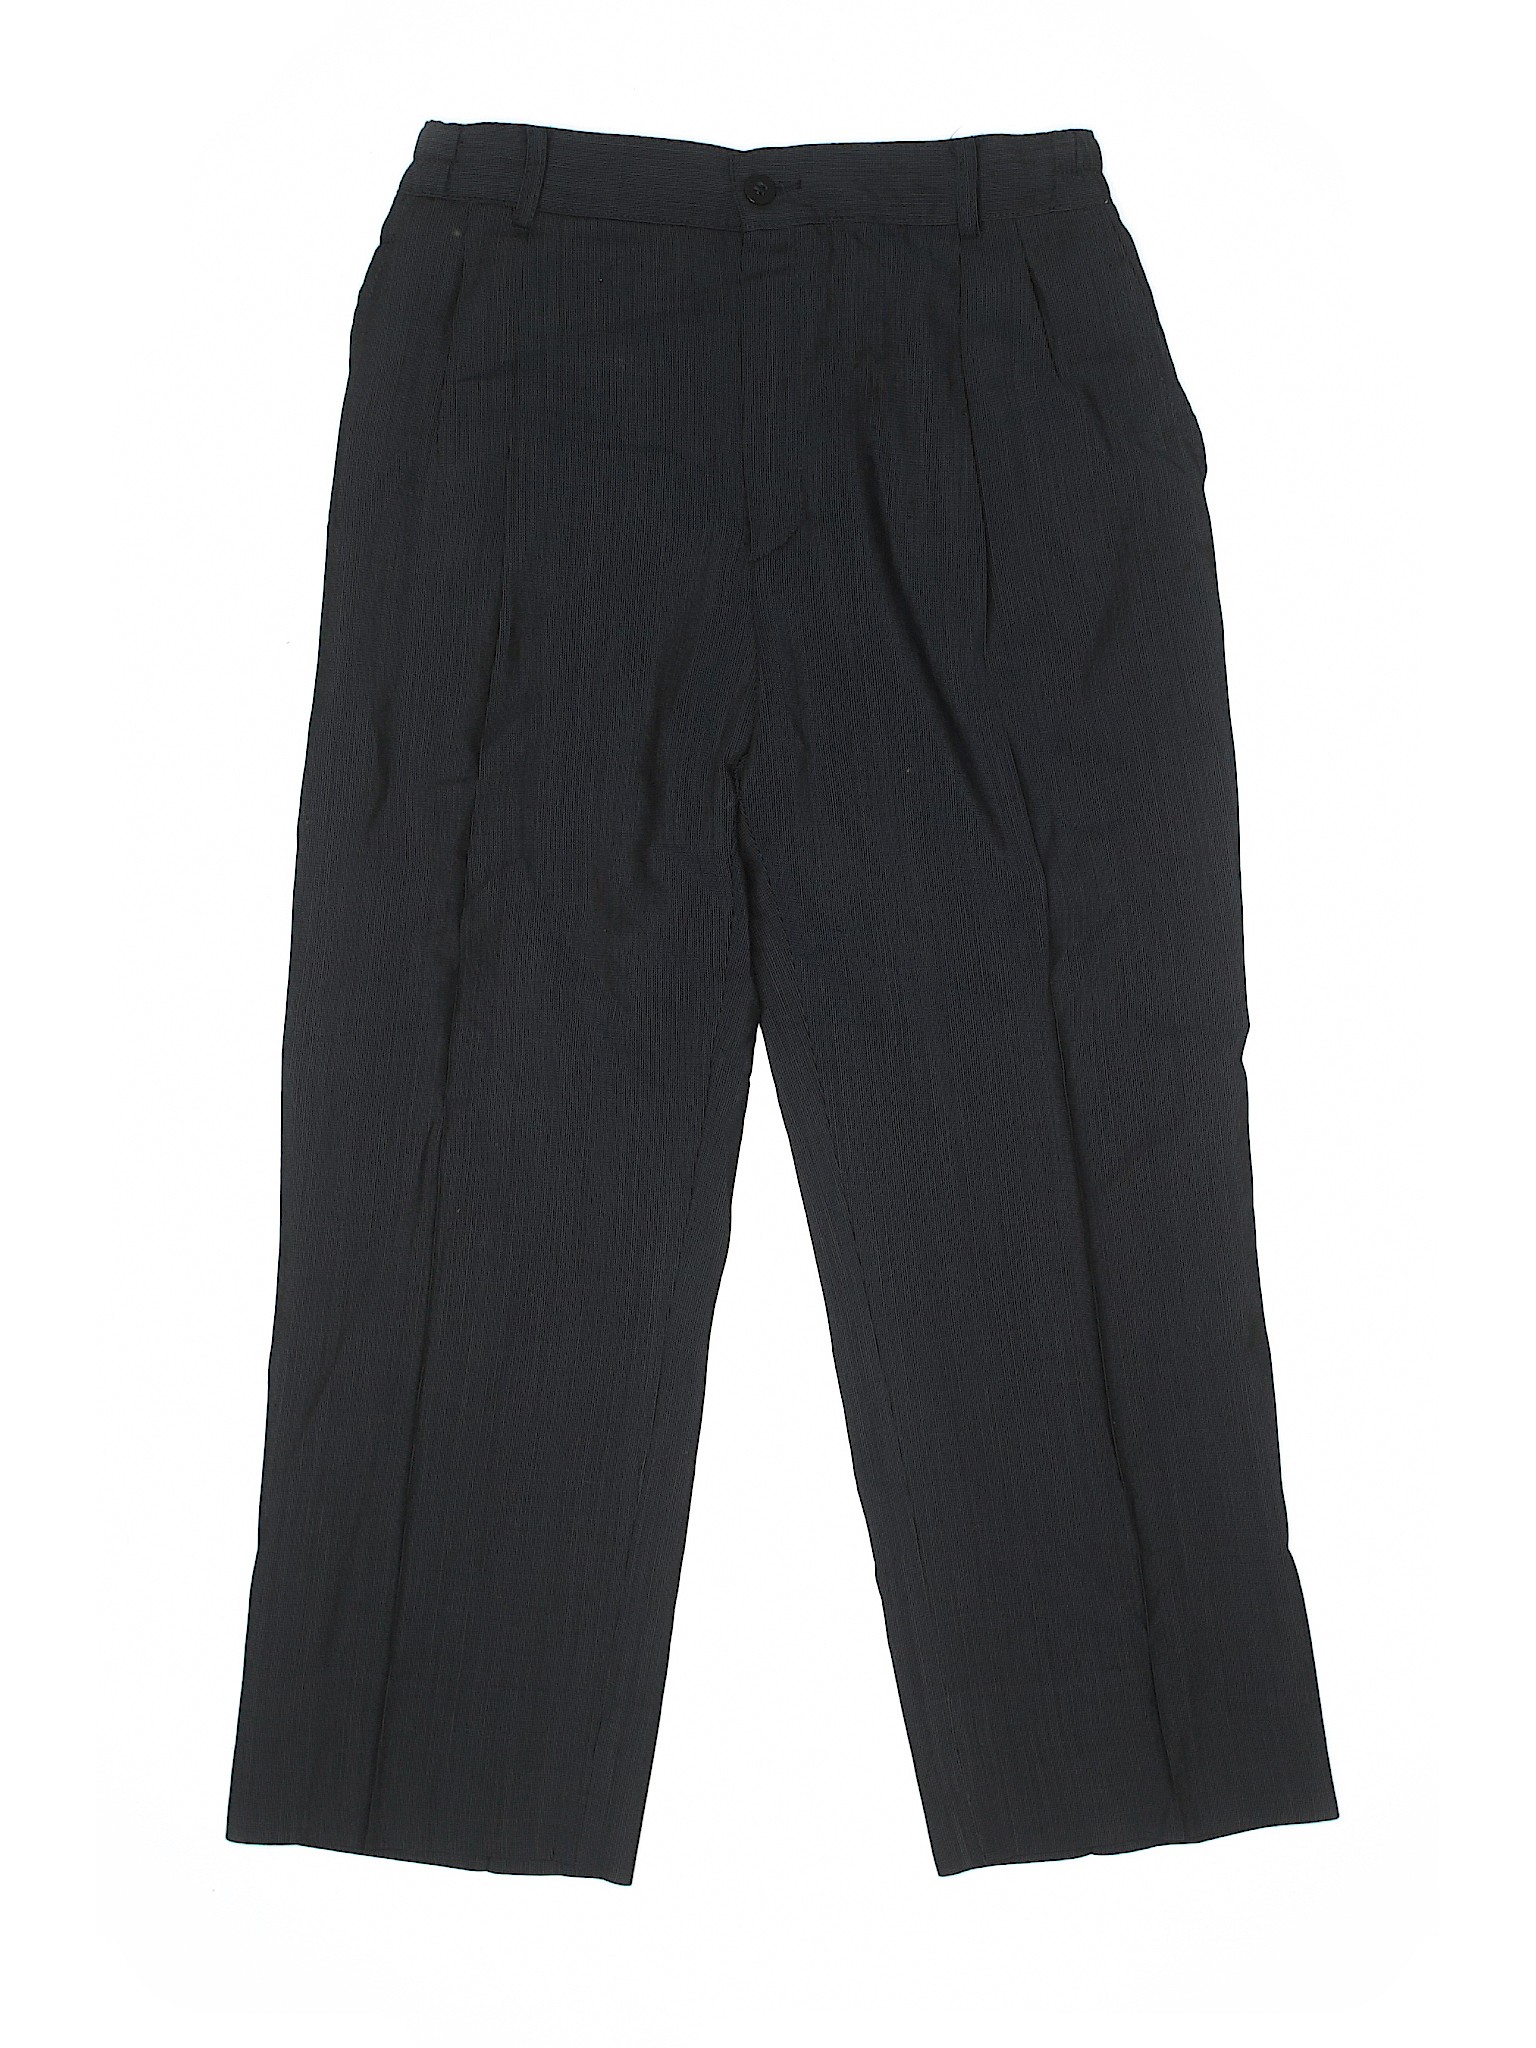 Unbranded Boys Black Wool Pants 14 | eBay